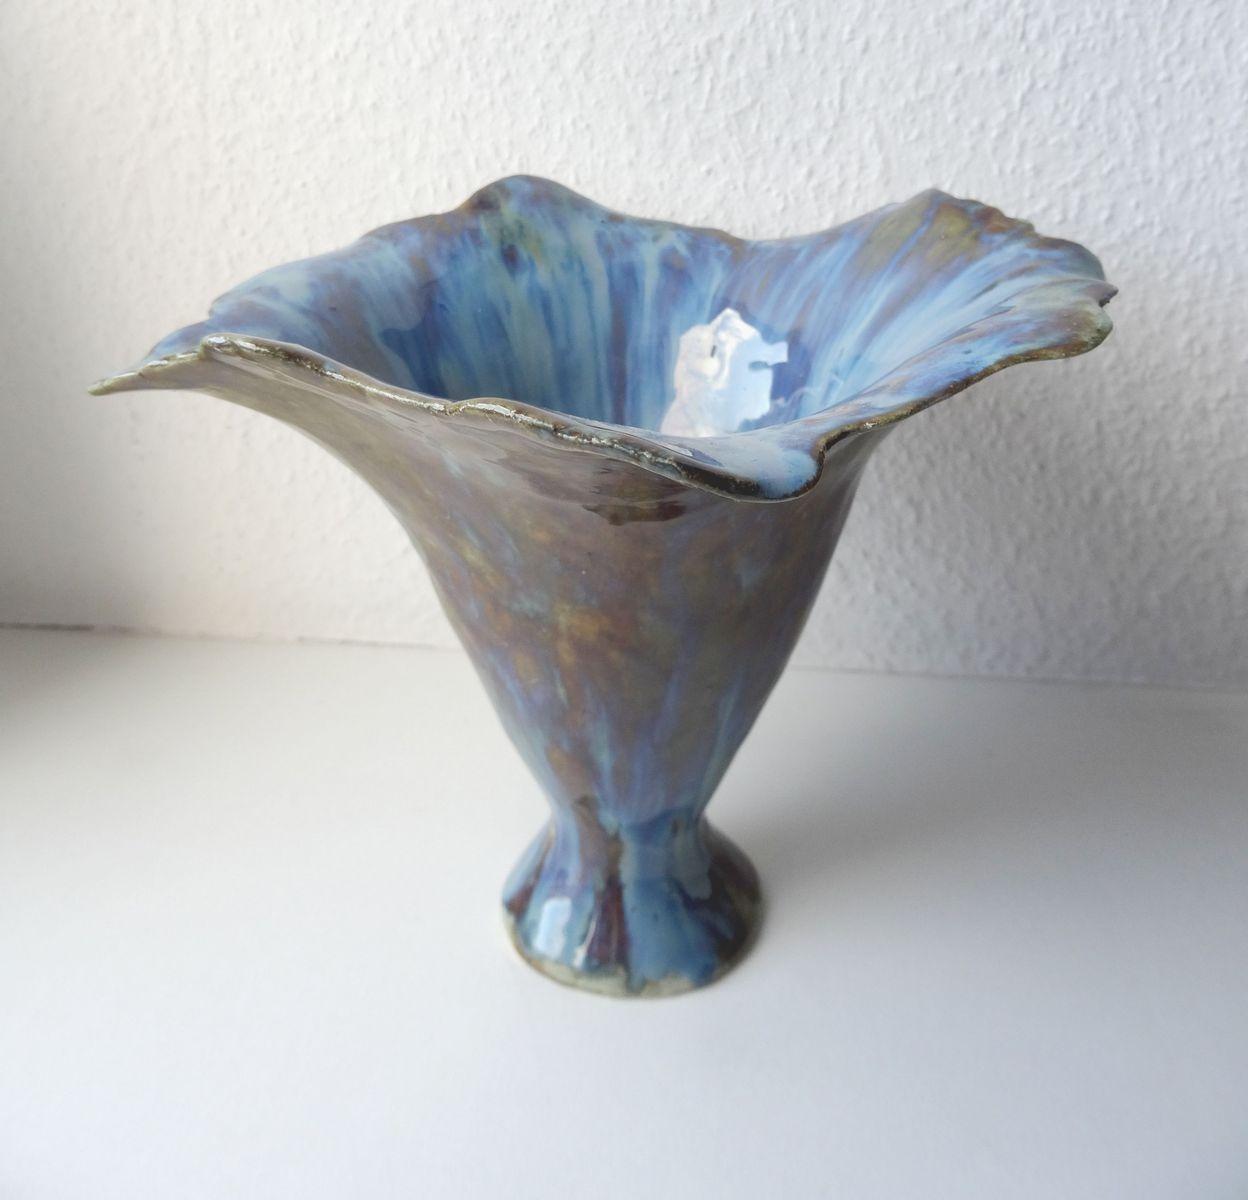 Blaue Blume aus der Vase. 2017. Massivsteinstein, H 17,5 cm, Durchmesser 21,5 cm – Art von Elina Titane 